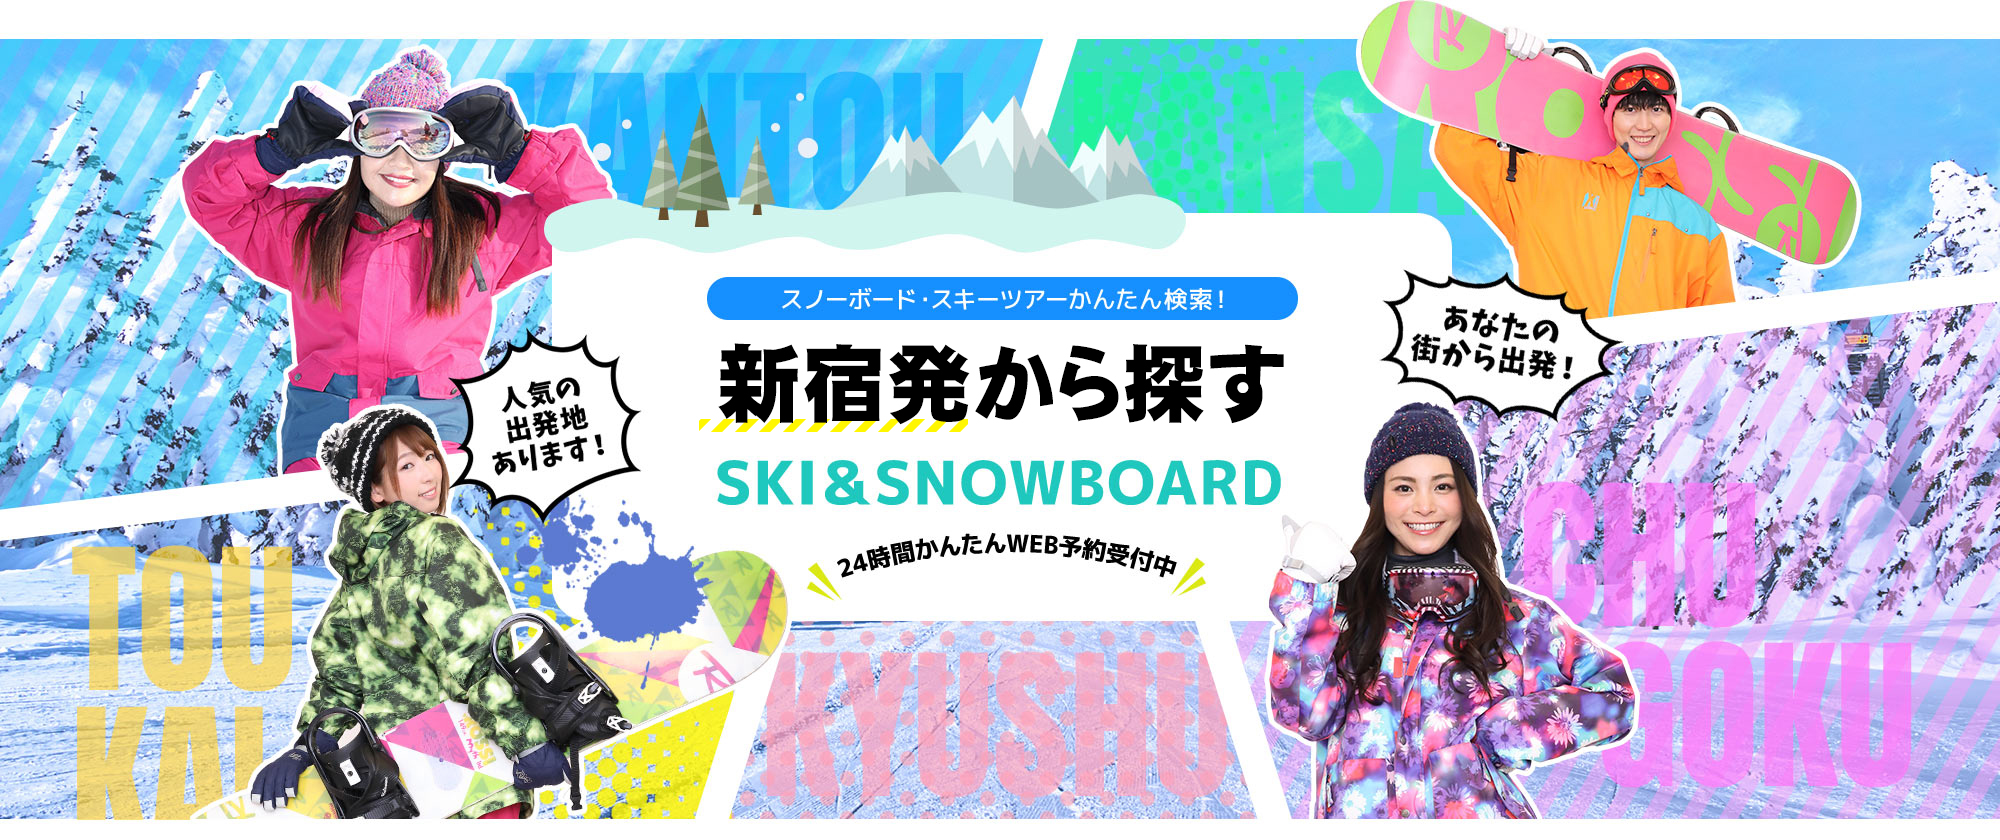 スノーボード・スキーツアーかんたん検索！ 新宿発から探す SKI&SNOWBOARD